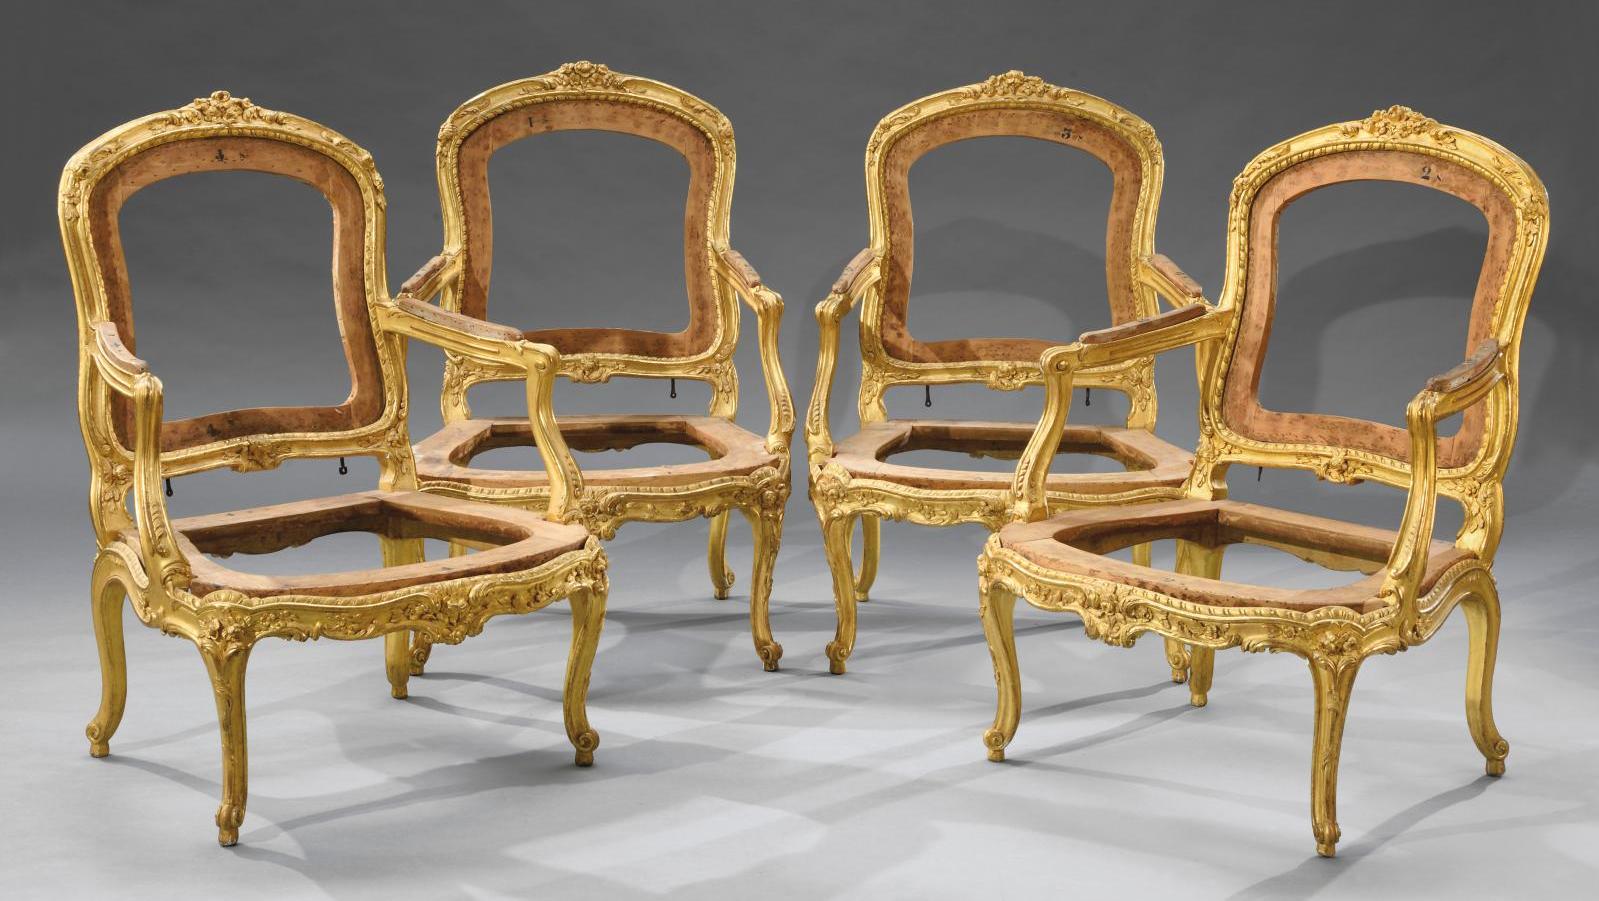 Époque Louis XV. Suite de quatre fauteuils à dossier plat à châssis en hêtre sculpté... Des marques de valeur pour des assises princières